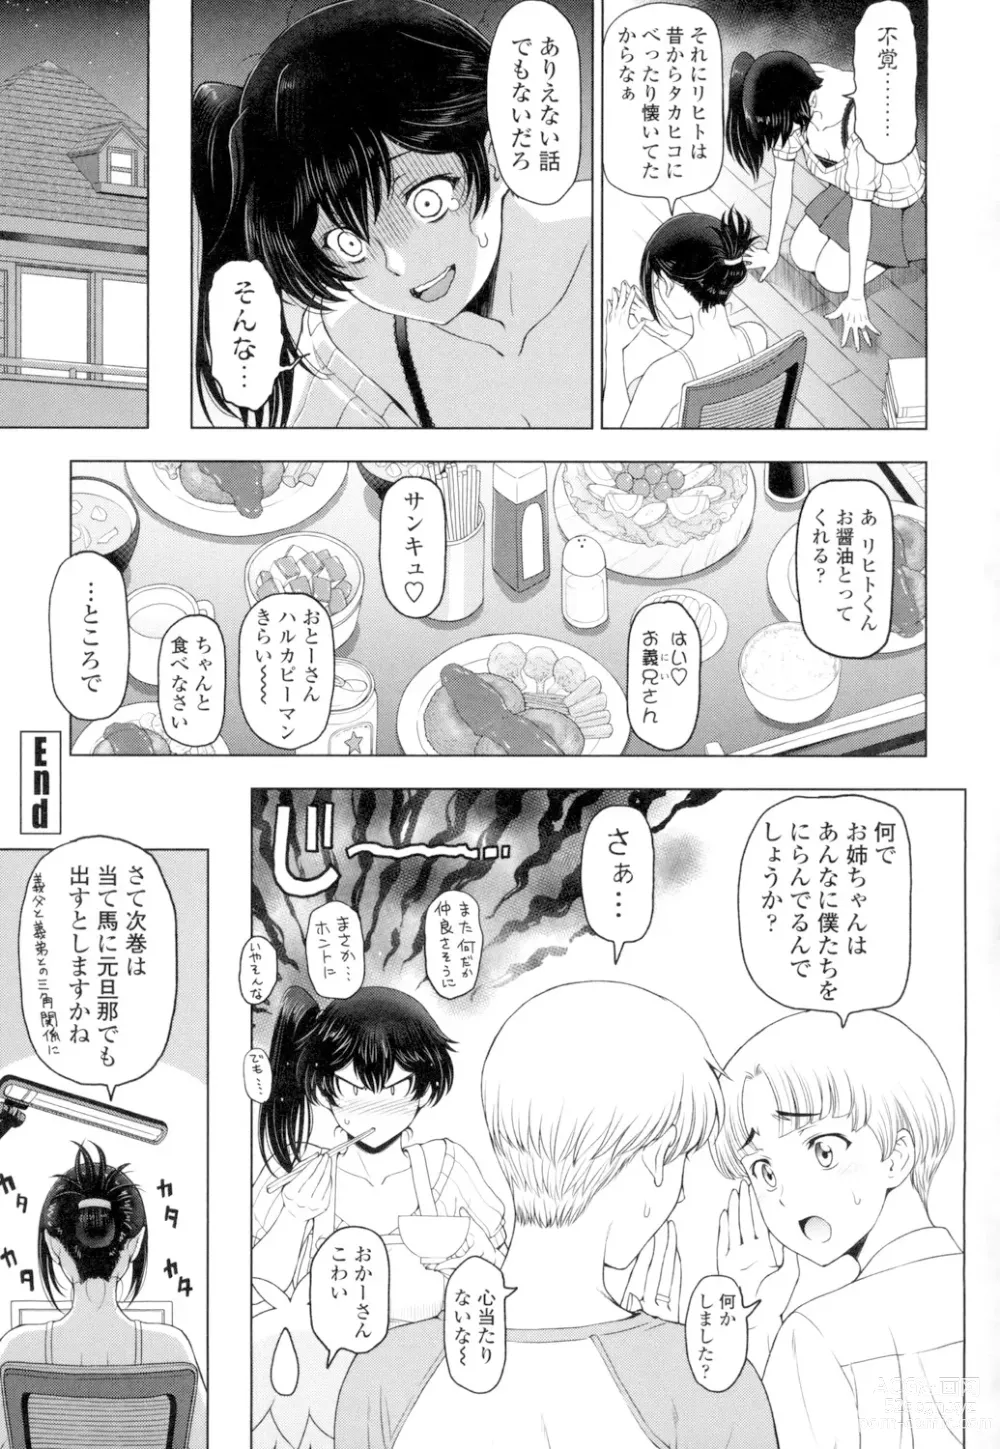 Page 213 of manga Natsu-jiru ~Ase ni Mamirete Gucchagucha~